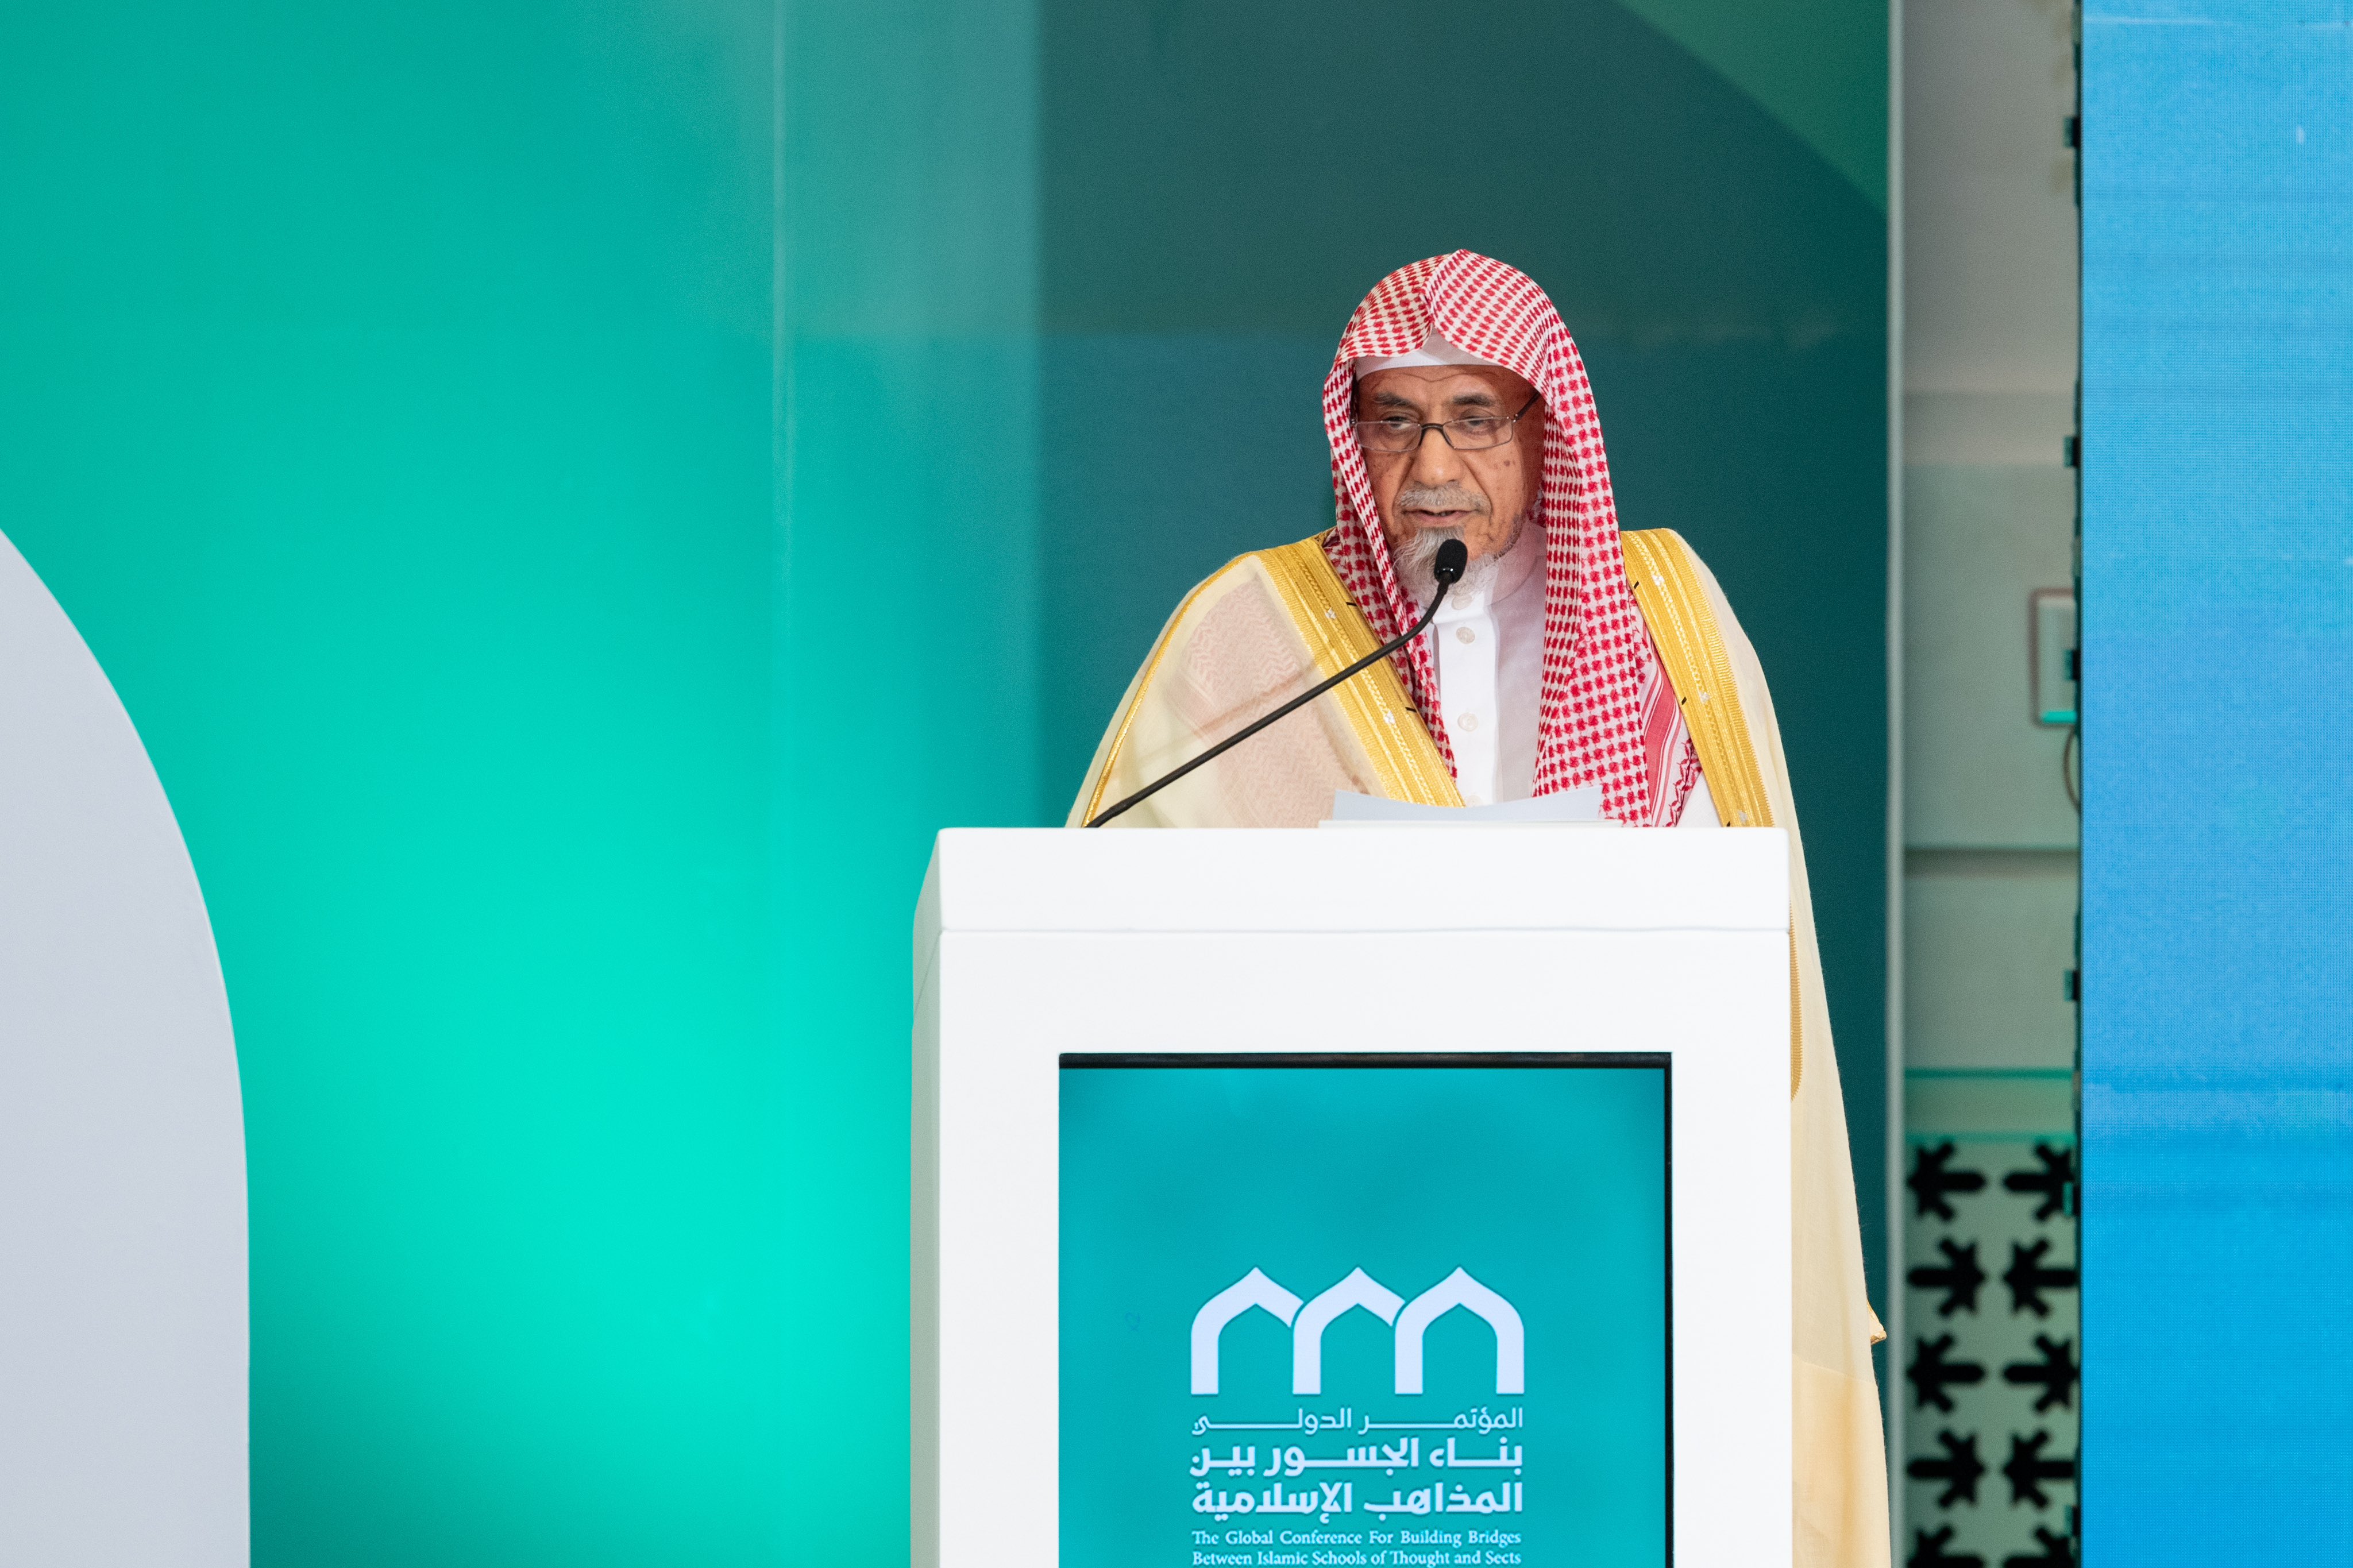 Cheikh Saleh bin Abdullah bin Humaid, conseiller à la Cour royale, imam et prédicateur de la Grande Mosquée de La Mecque et membre du Conseil des grands savants, lors de la séance de clôture de la Conférence sur la construction de ponts entre les